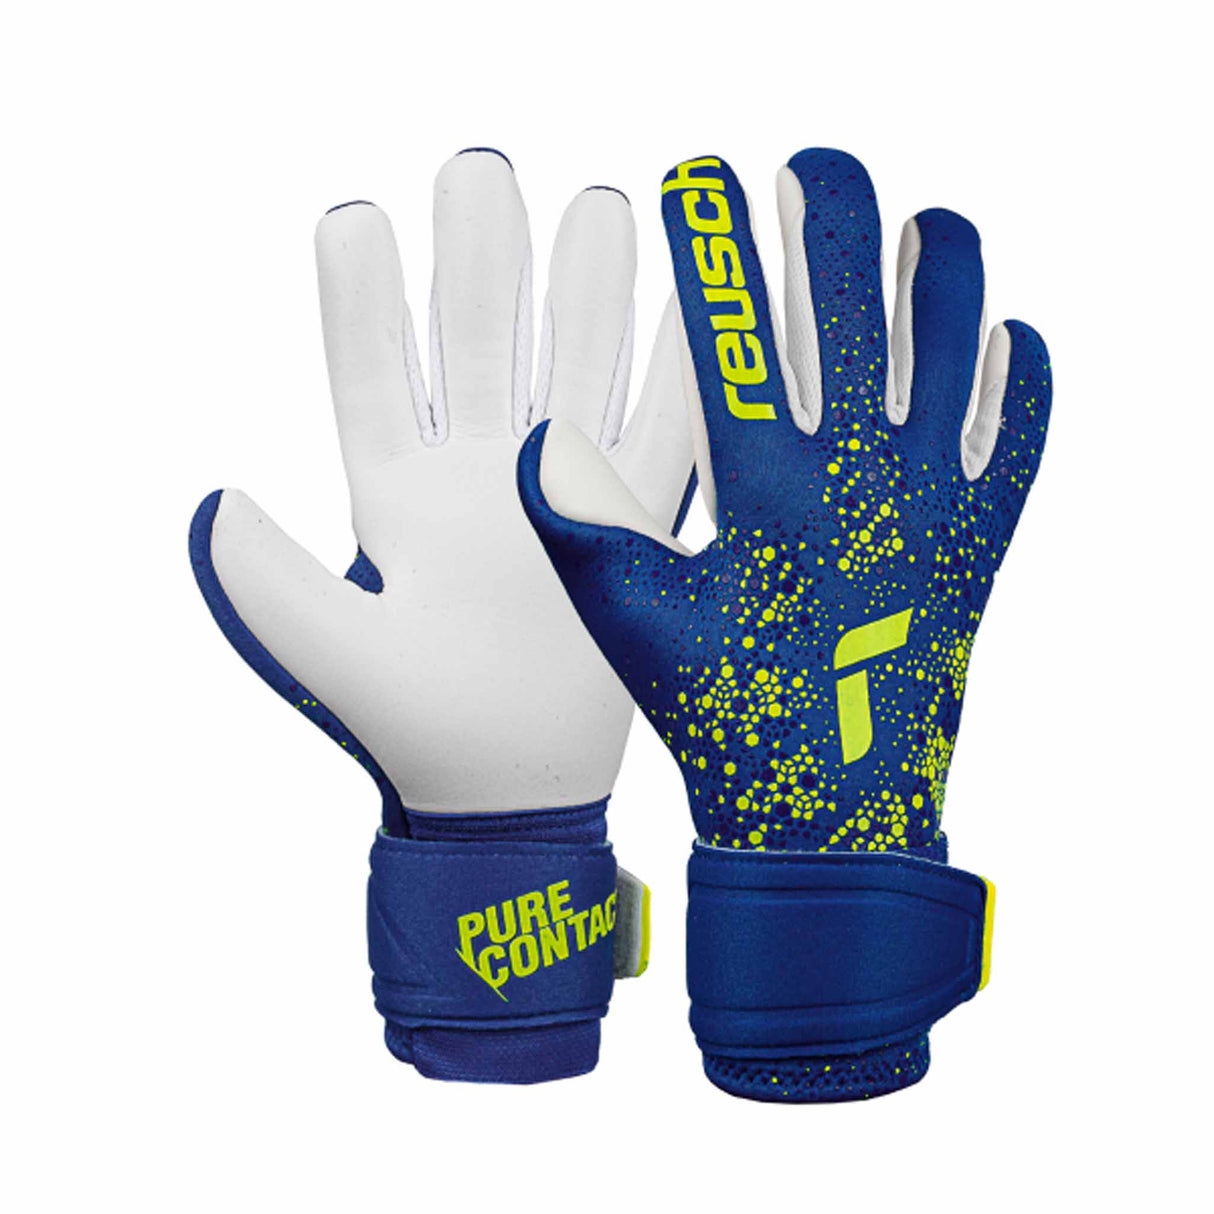 Reusch Pure Contact Silver junior gants de gardien de soccer - Bleu / Jaune